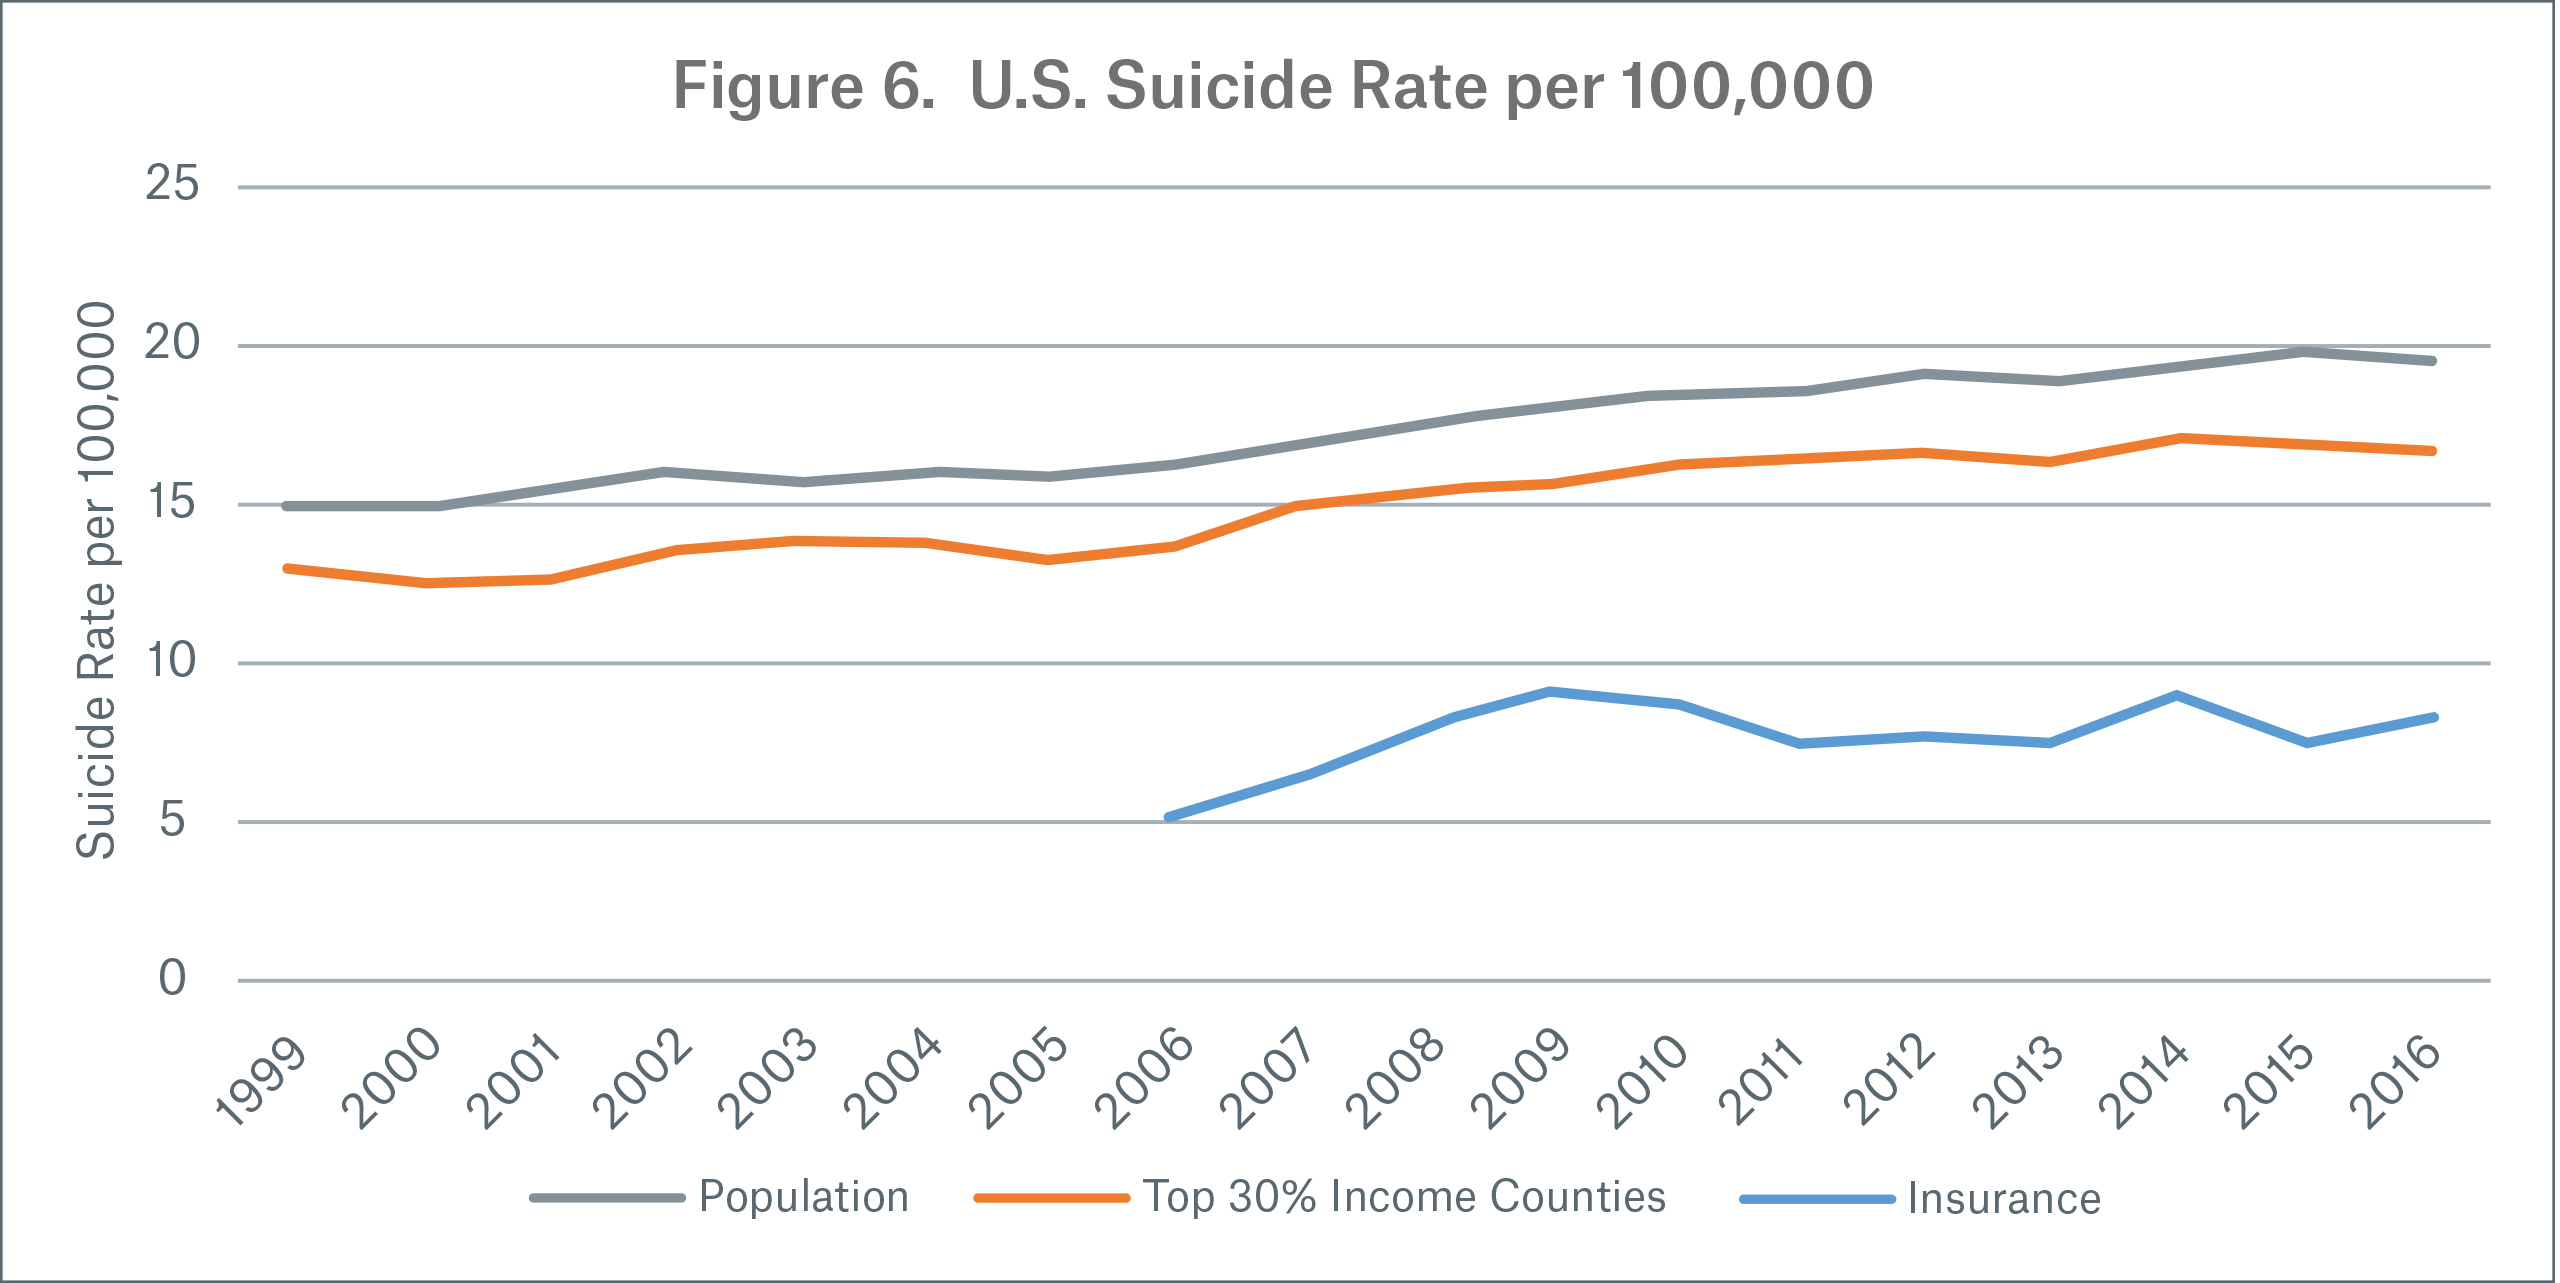 Figure 6 Image U.S. Suicide Rate per 100,000